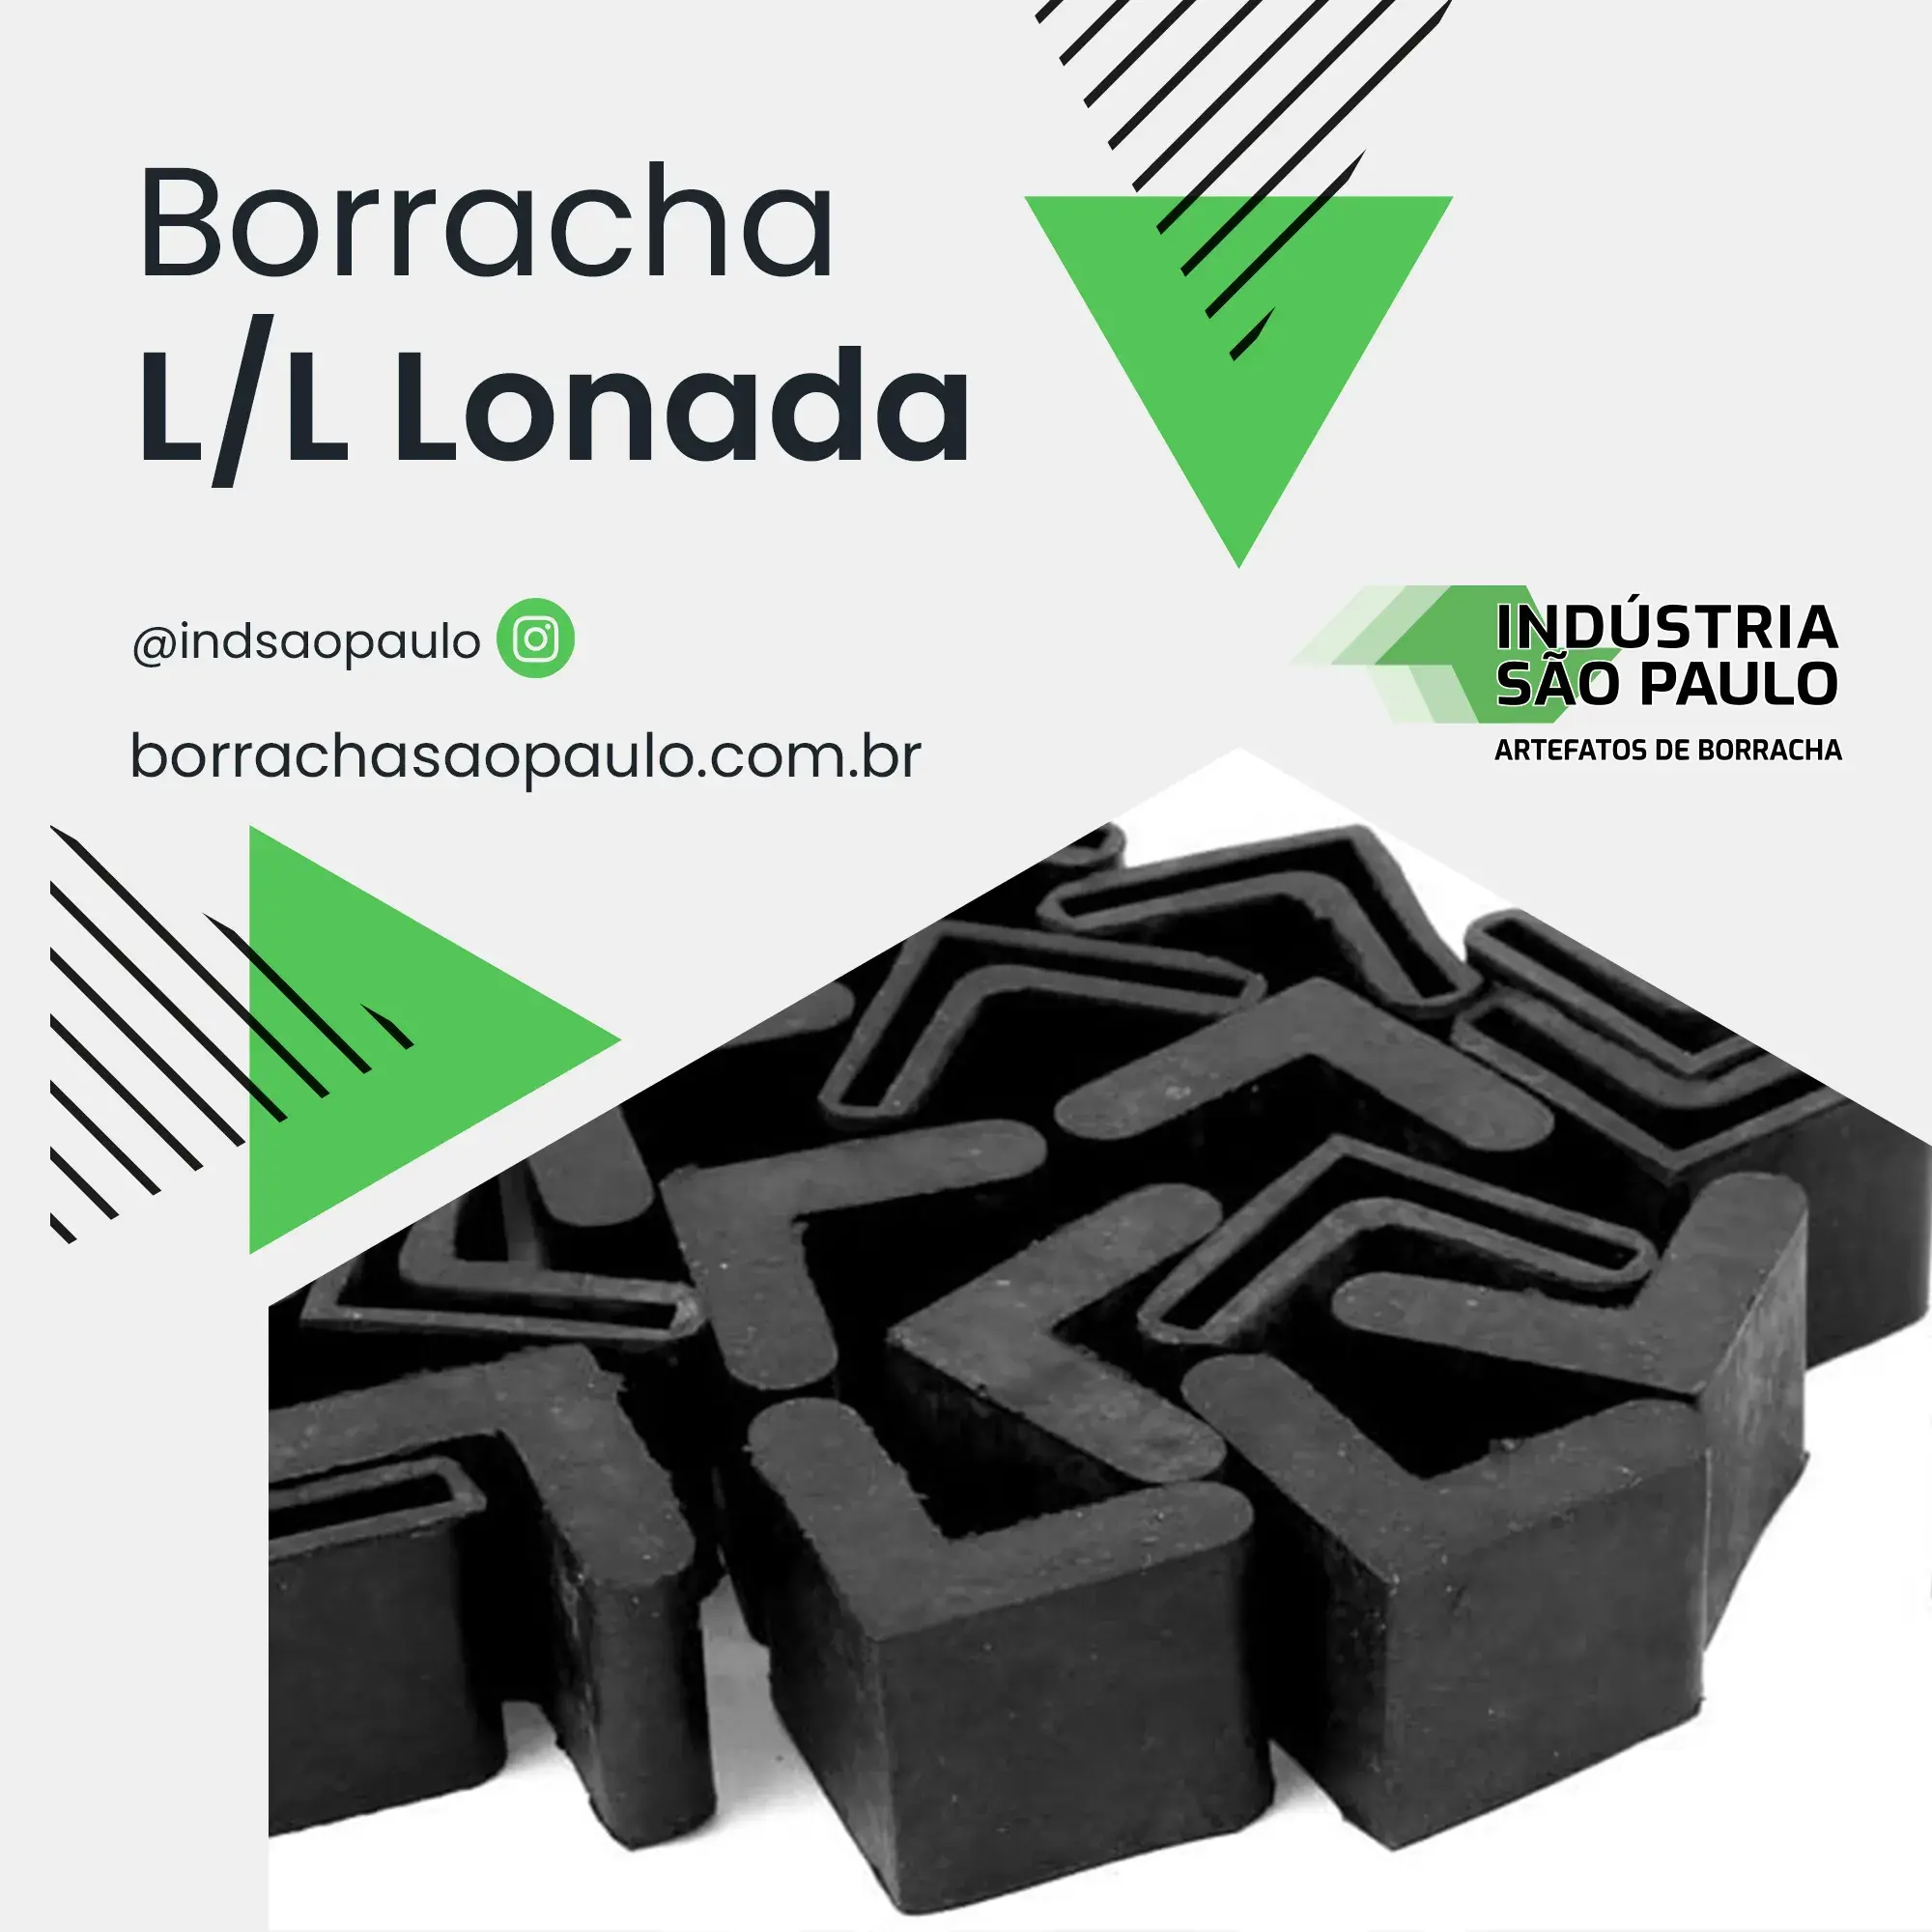 Borracha L/L Lonada